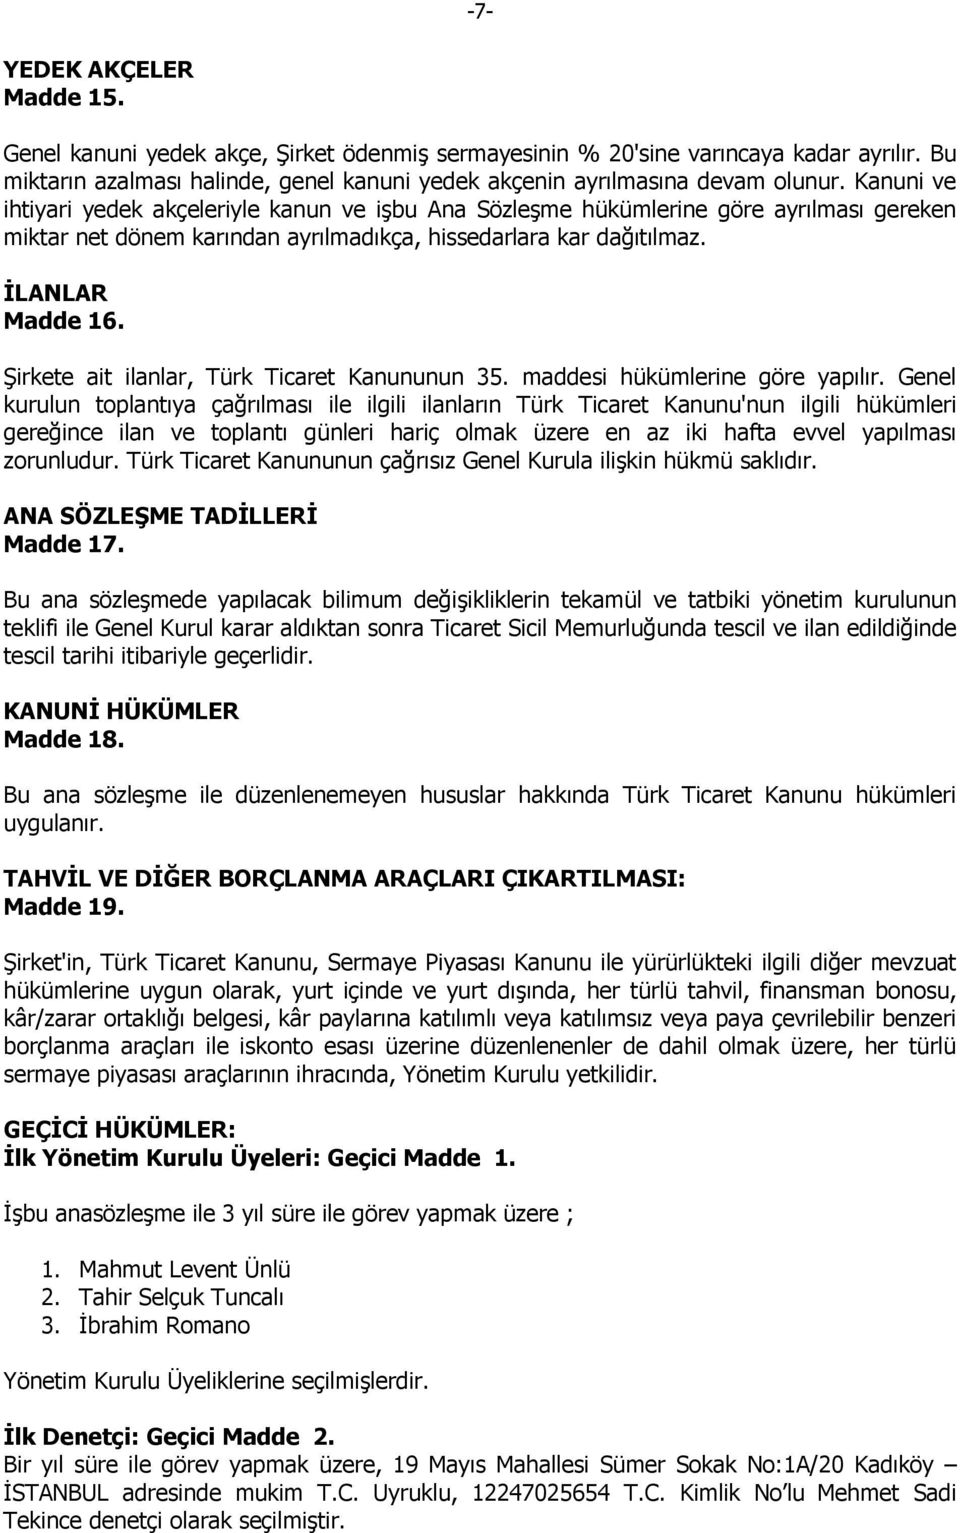 Şirkete ait ilanlar, Türk Ticaret Kanununun 35. maddesi hükümlerine göre yapılır.